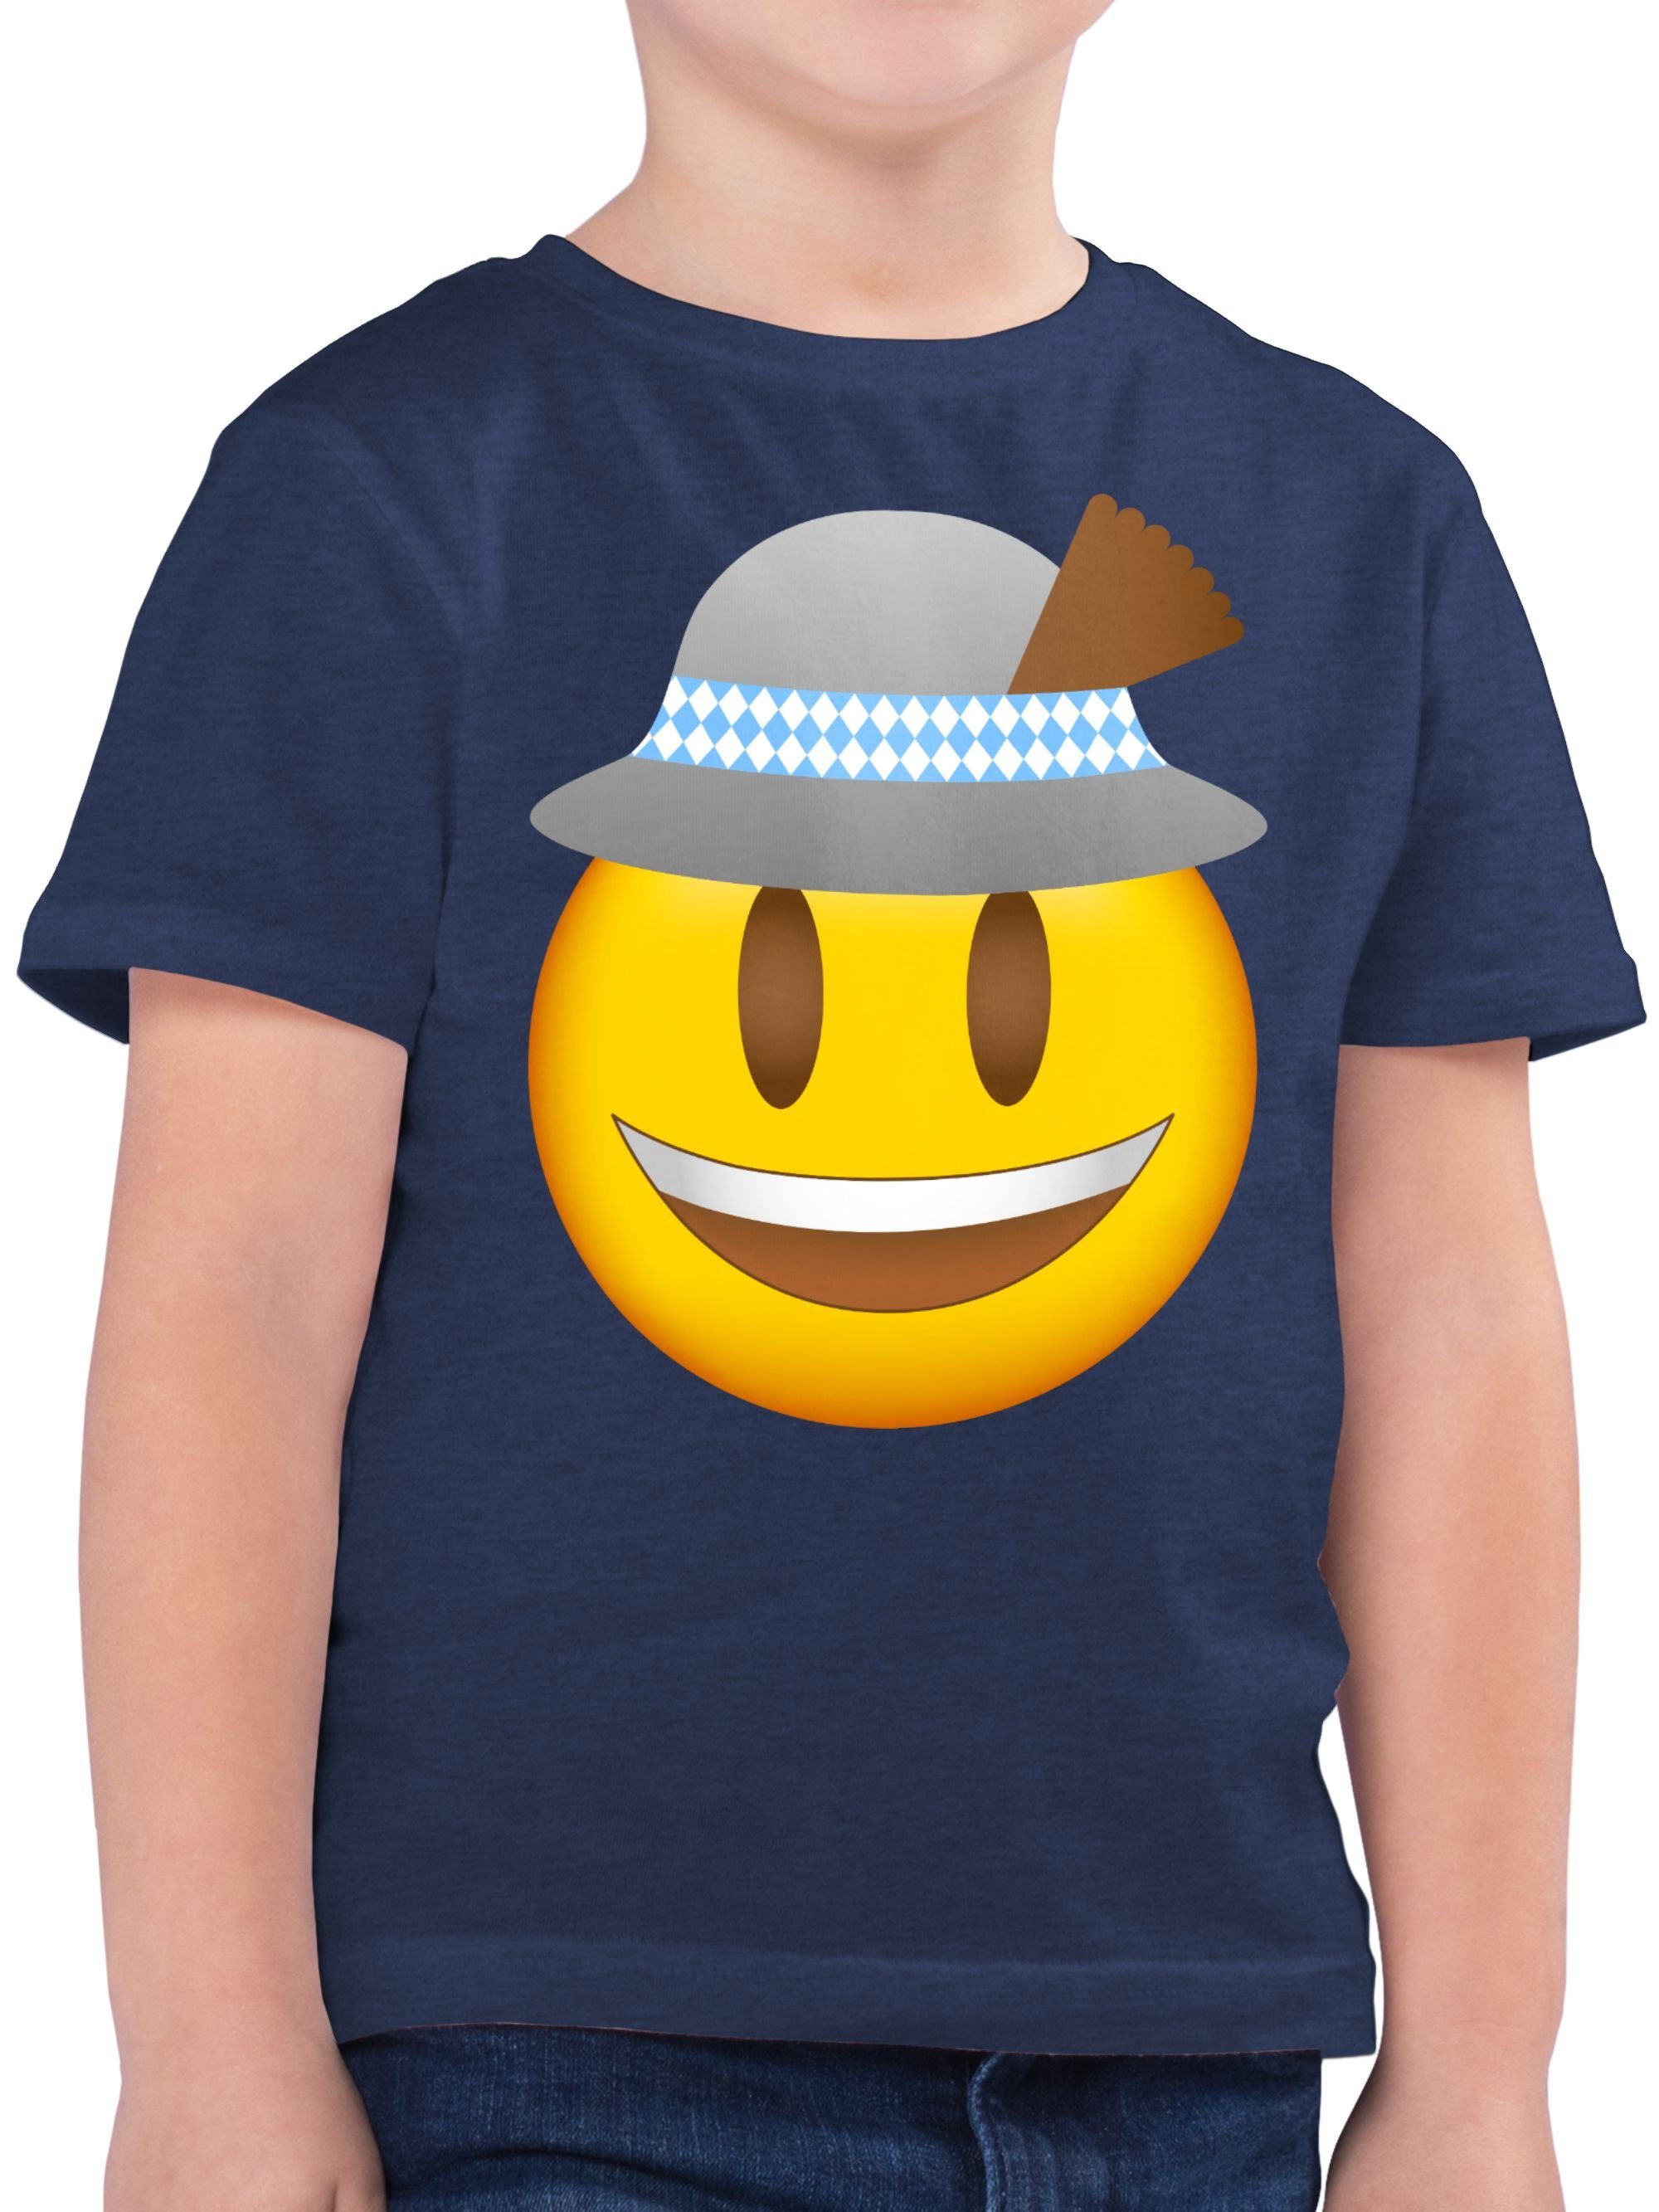 Shirtracer T-Shirt Oktoberfest Emoticon mit Hut Mode für Oktoberfest Kinder Outfit 3 Dunkelblau Meliert